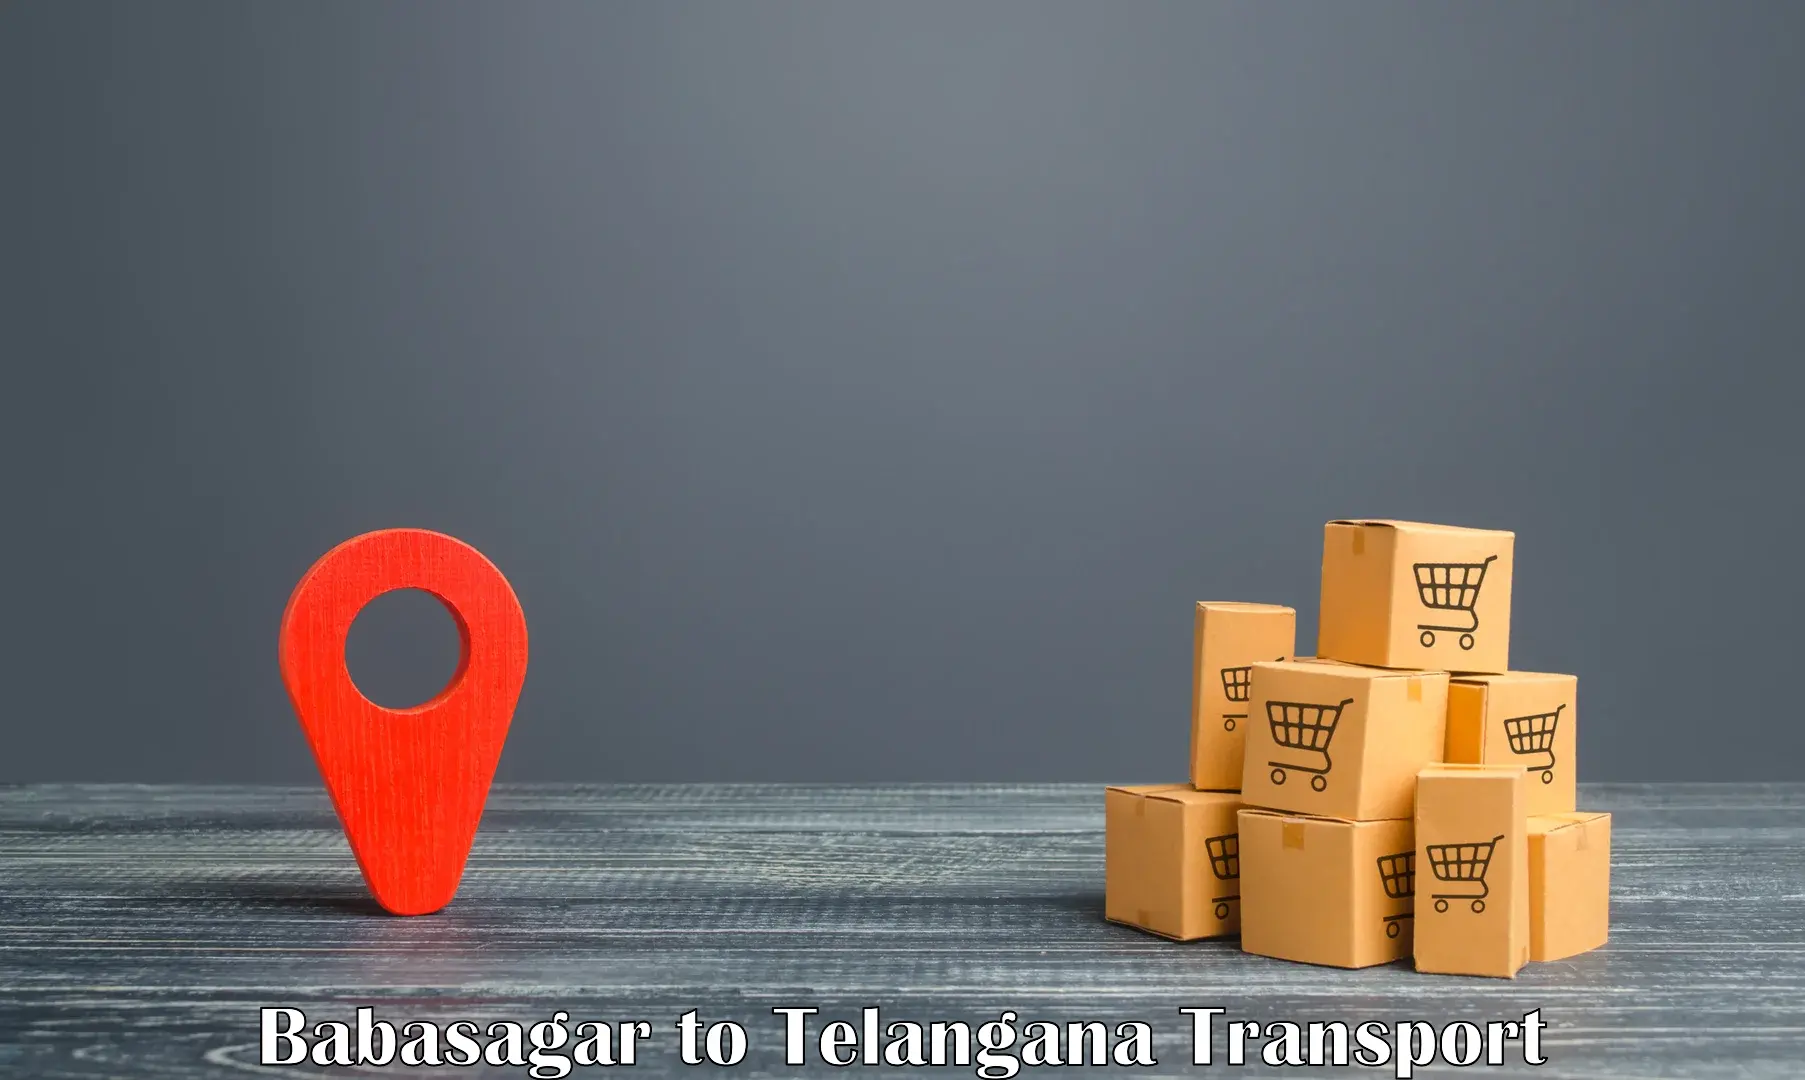 Online transport service Babasagar to Telangana